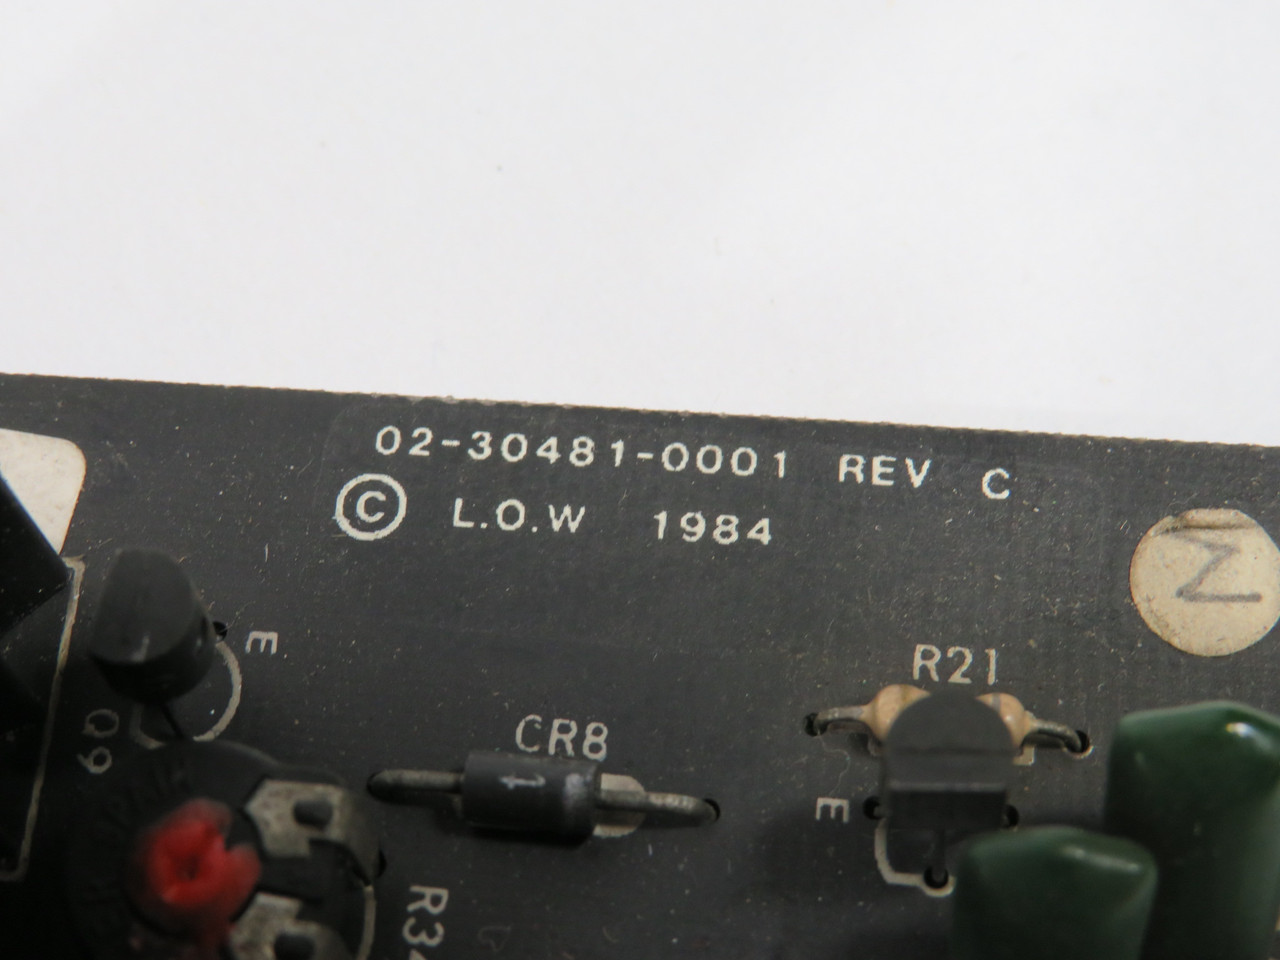 L.O.W. 02-30481-0001 Rev. C Power Supply Board COSMETIC DAMAGE USED